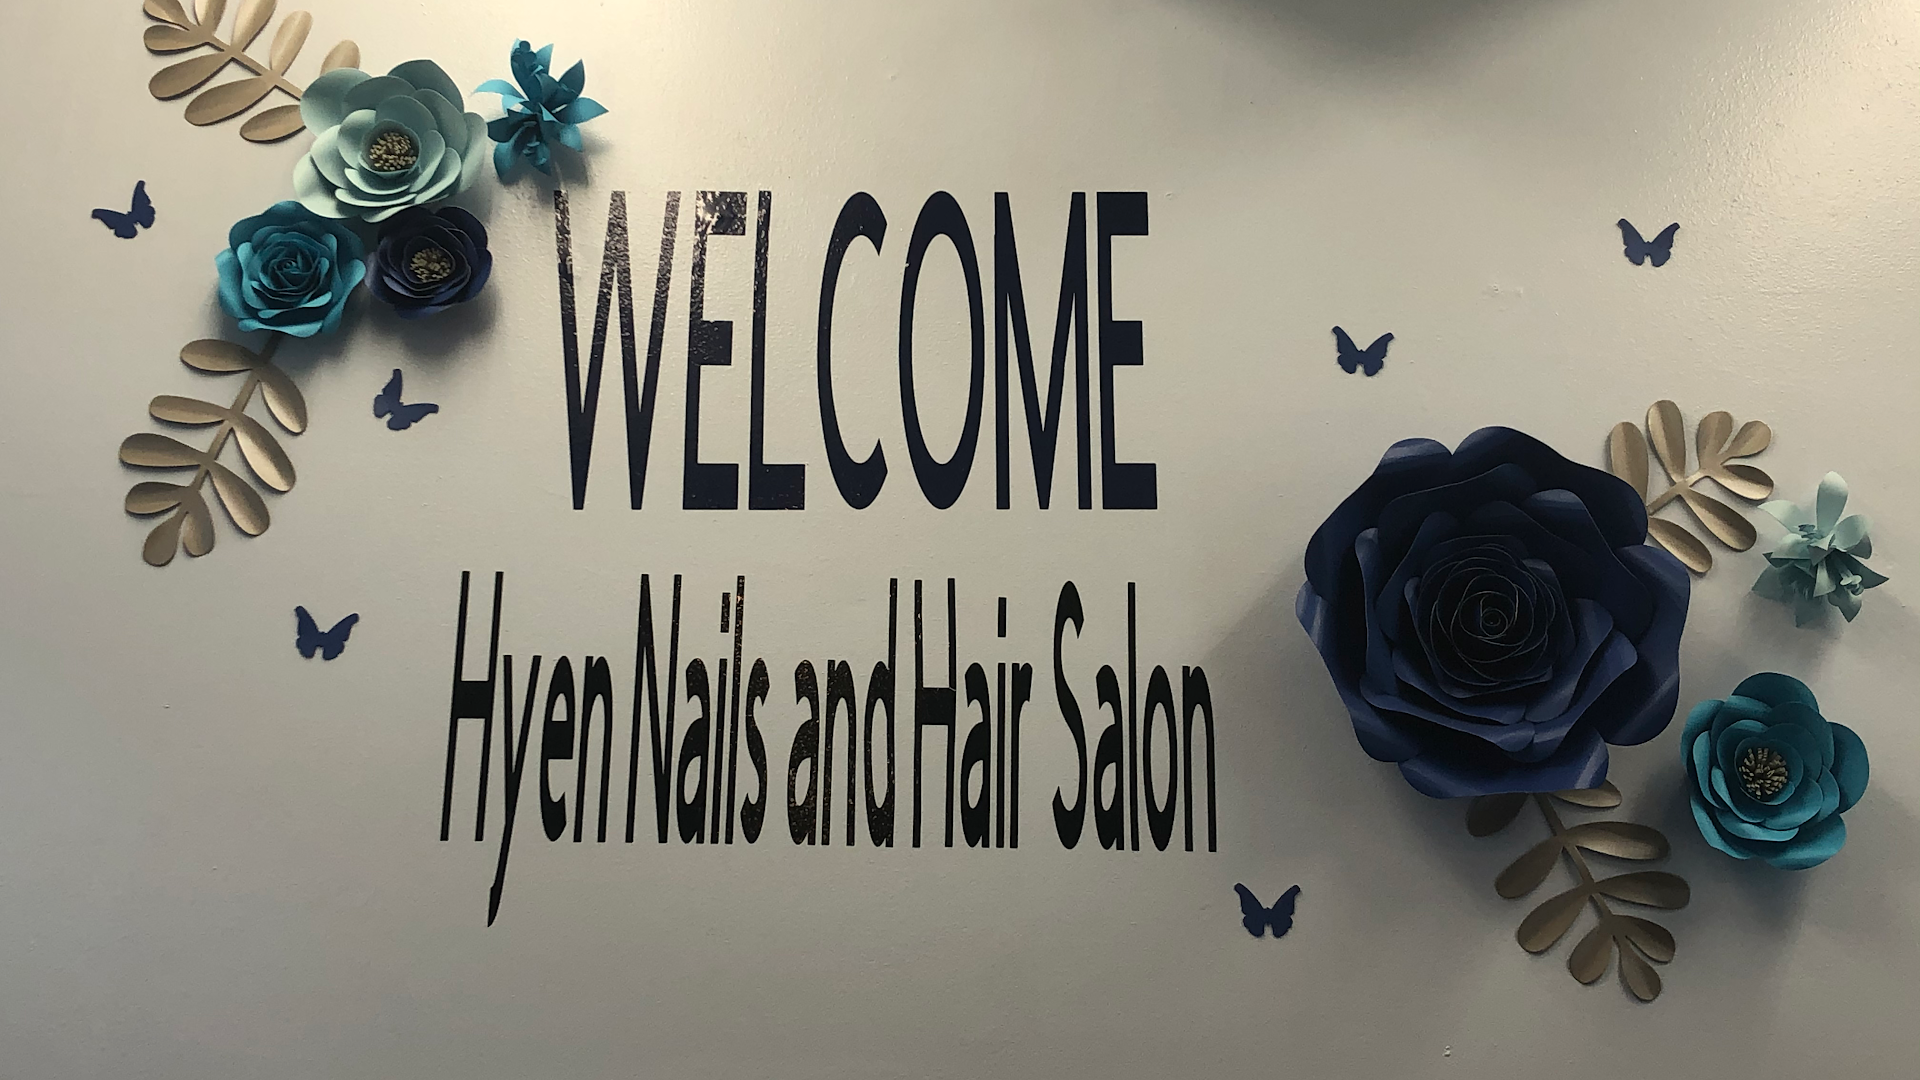 Hyen nails and hair salon